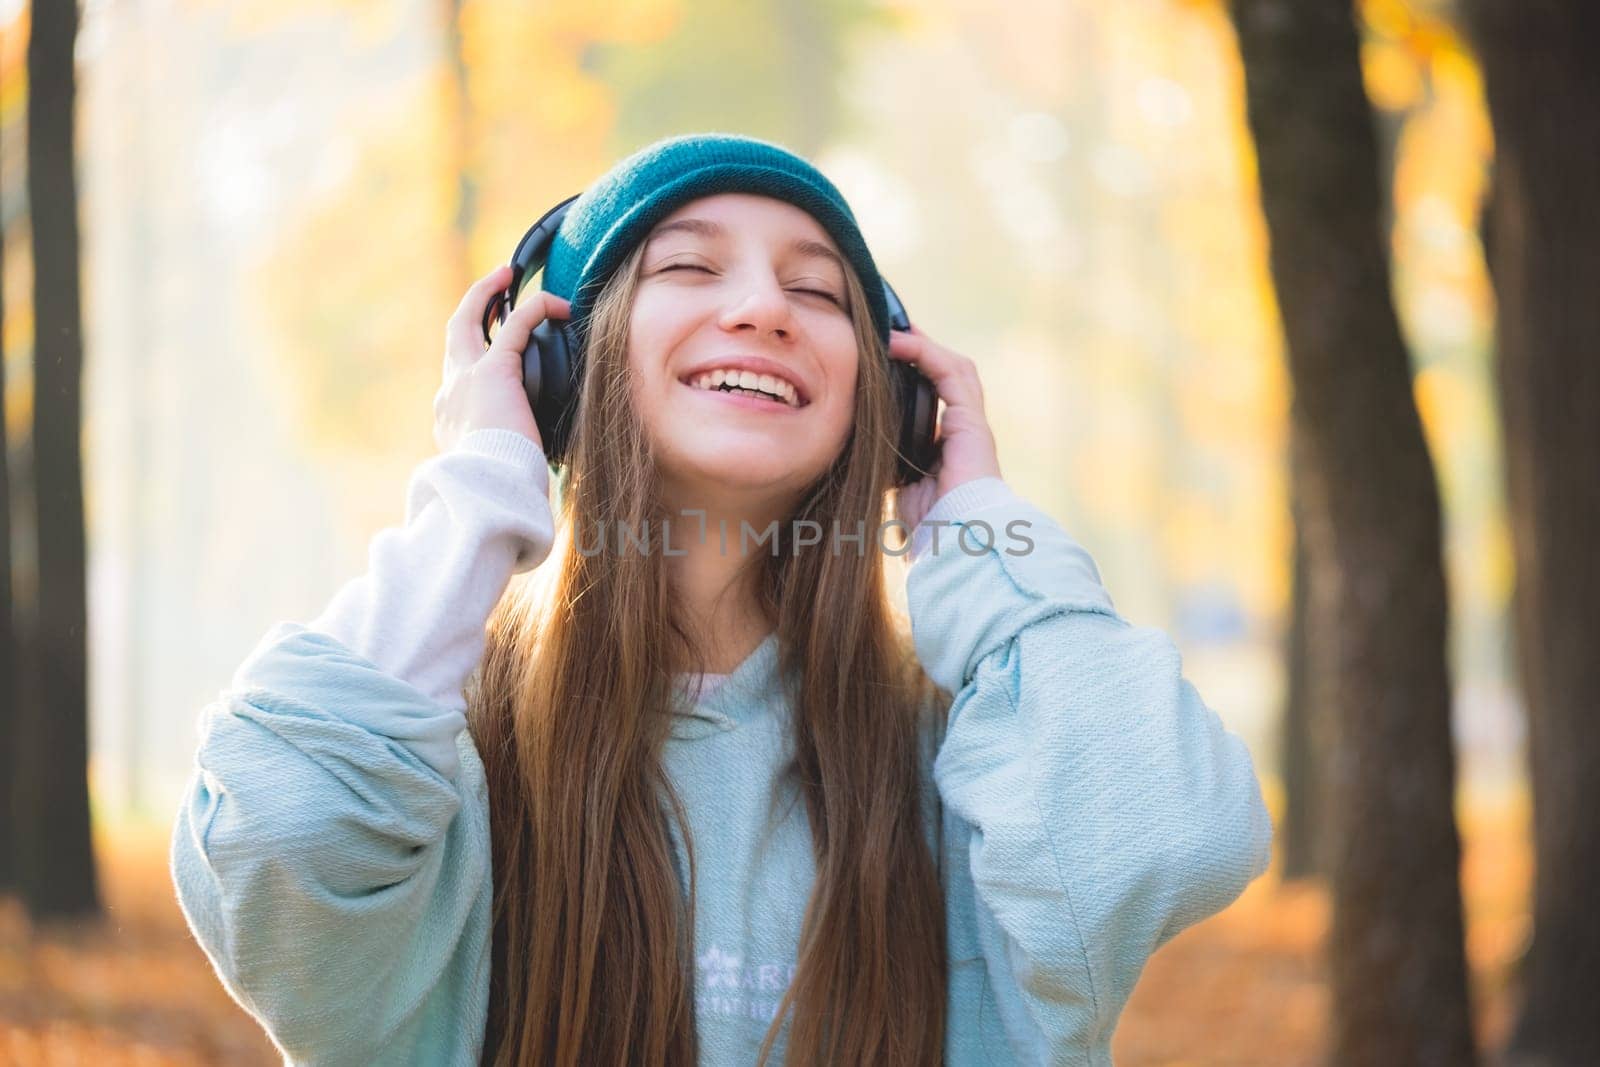 Smiling girl in headphones by GekaSkr